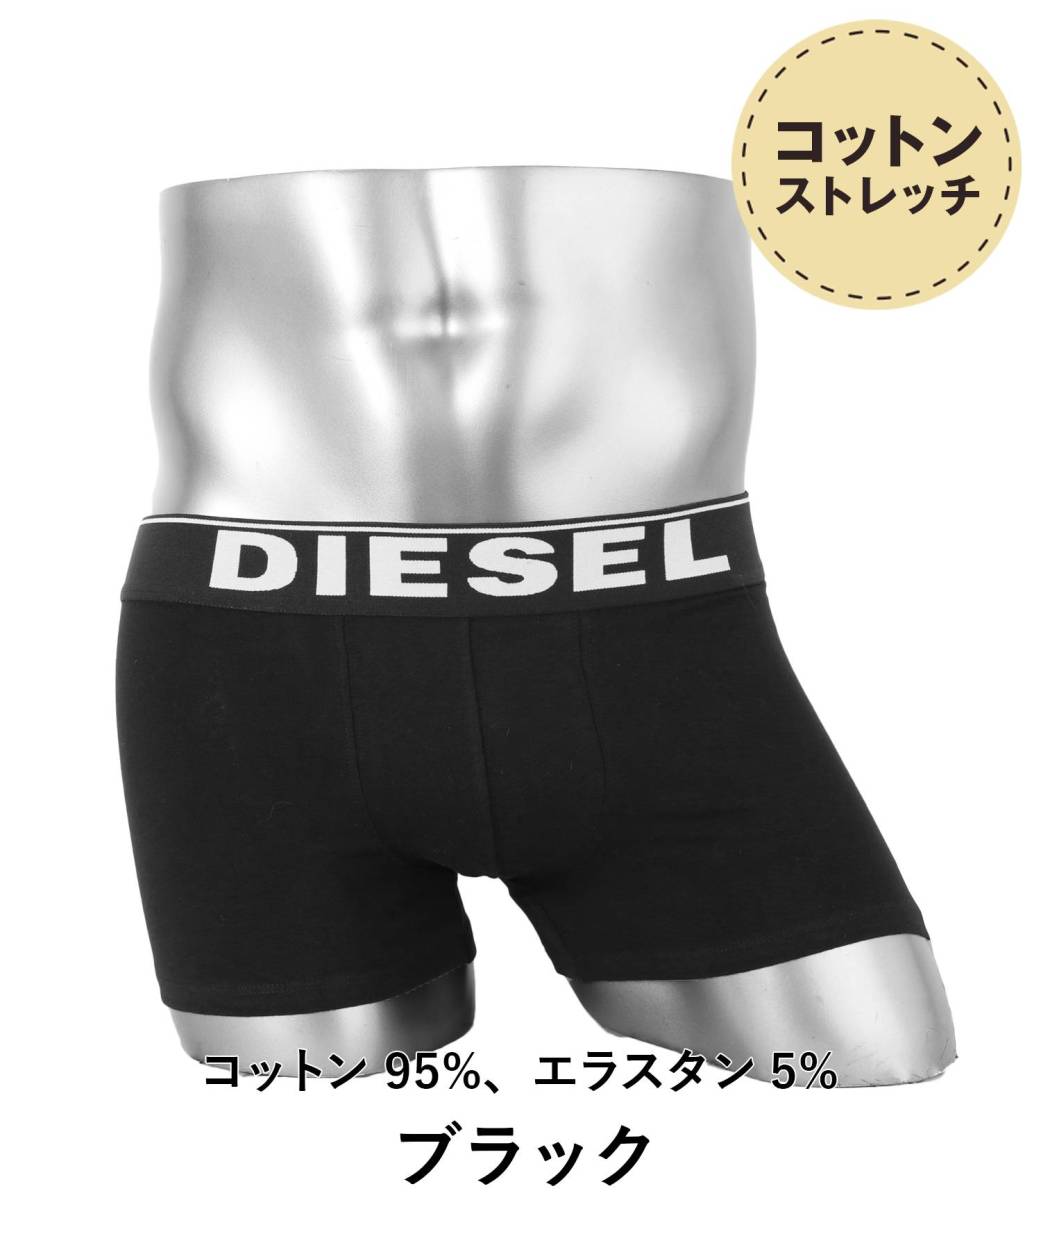 ディーゼル DIESEL ボクサーパンツ メンズ 男性 下着 かっこいい シンプル スポーティ ブランド 人気 アンダーウェア パンツ